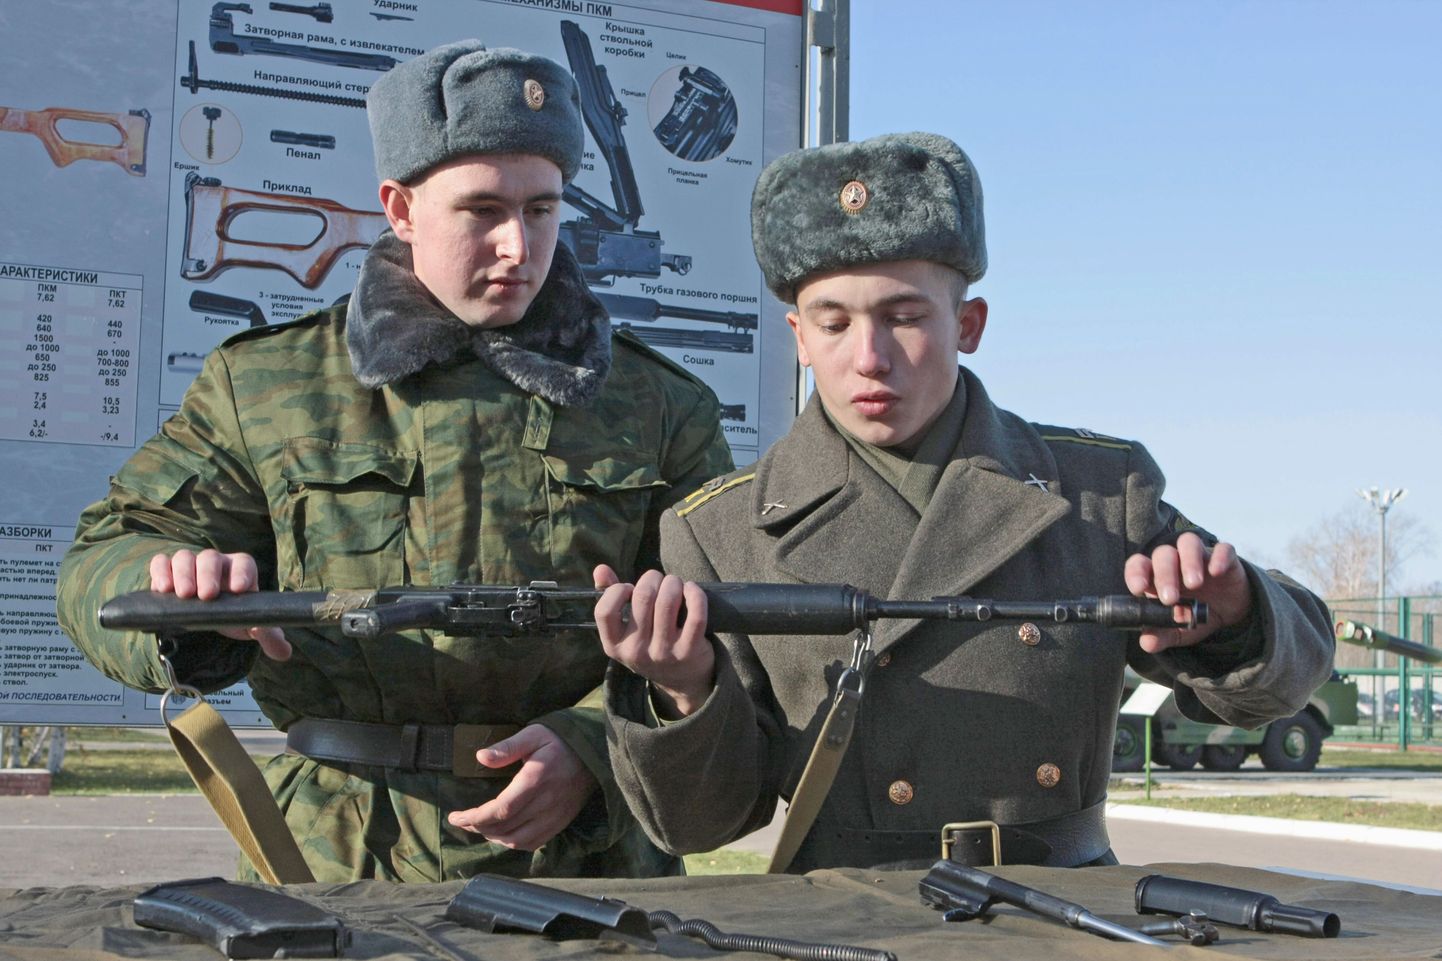 Vene sõdurid saavad uued relvad 2020. aastaks.